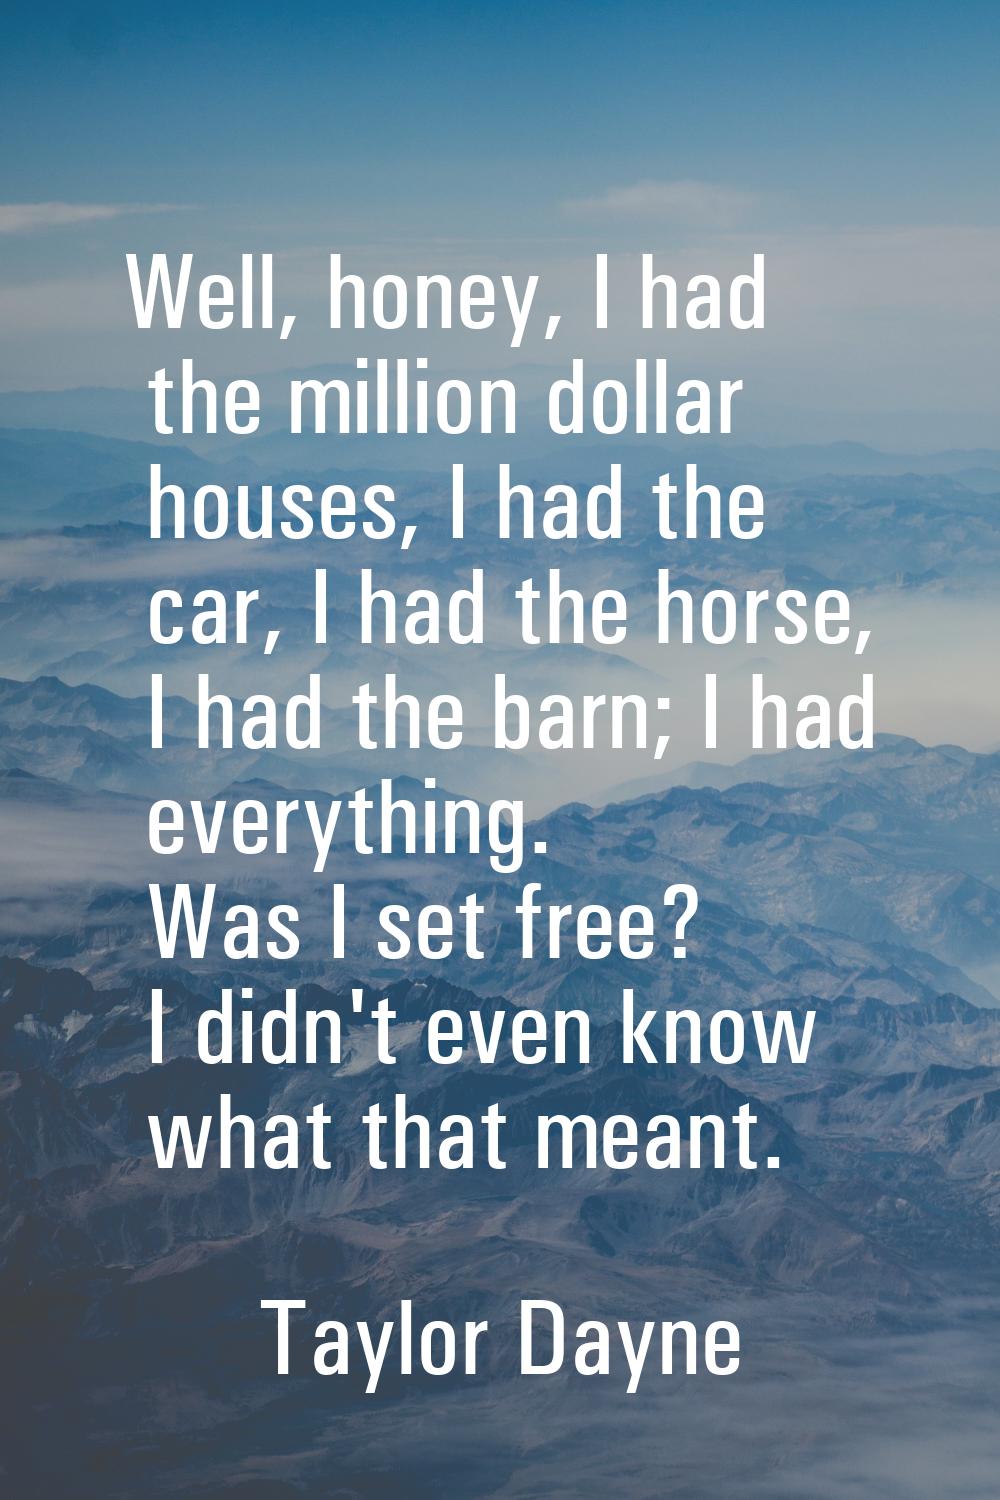 Well, honey, I had the million dollar houses, I had the car, I had the horse, I had the barn; I had